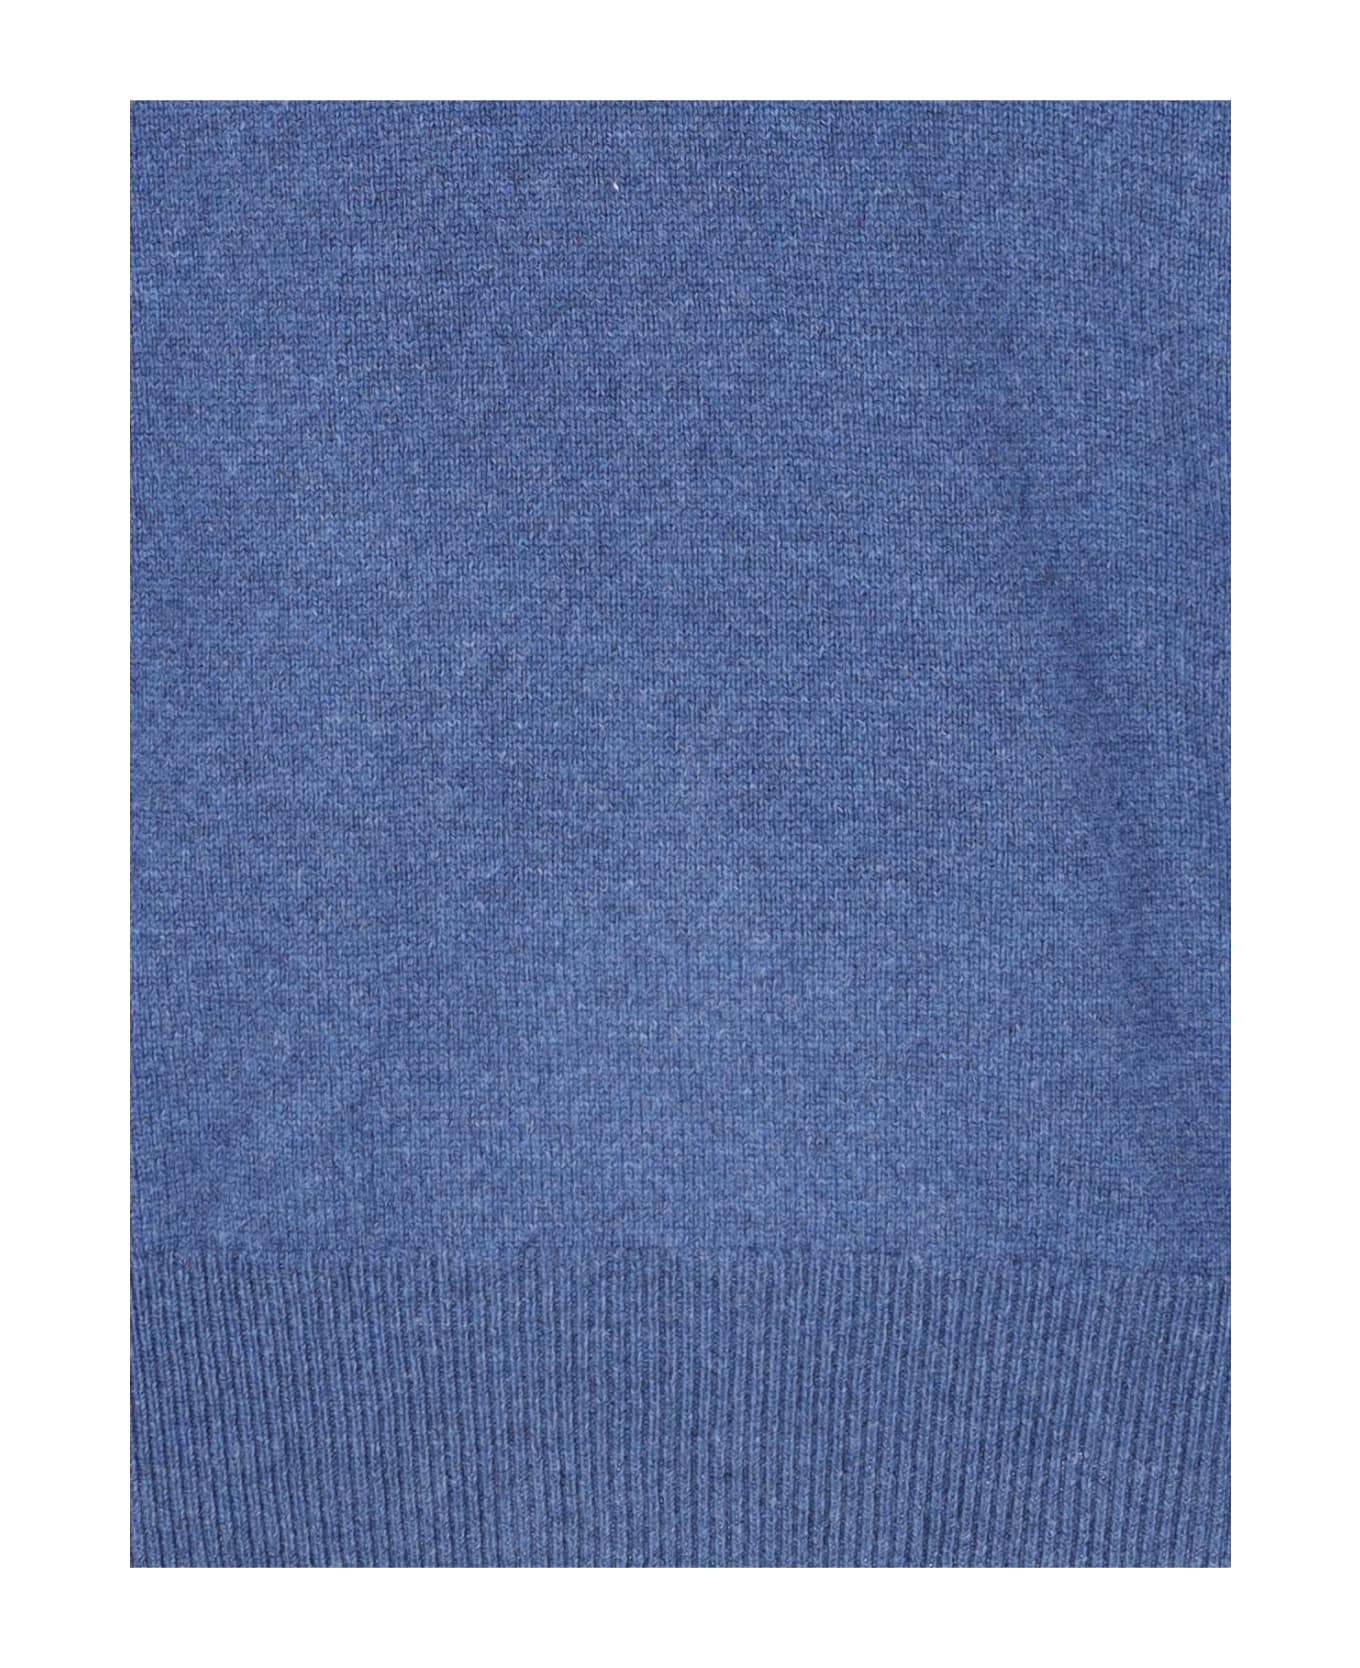 Ralph Lauren Logo Sweater - Blue